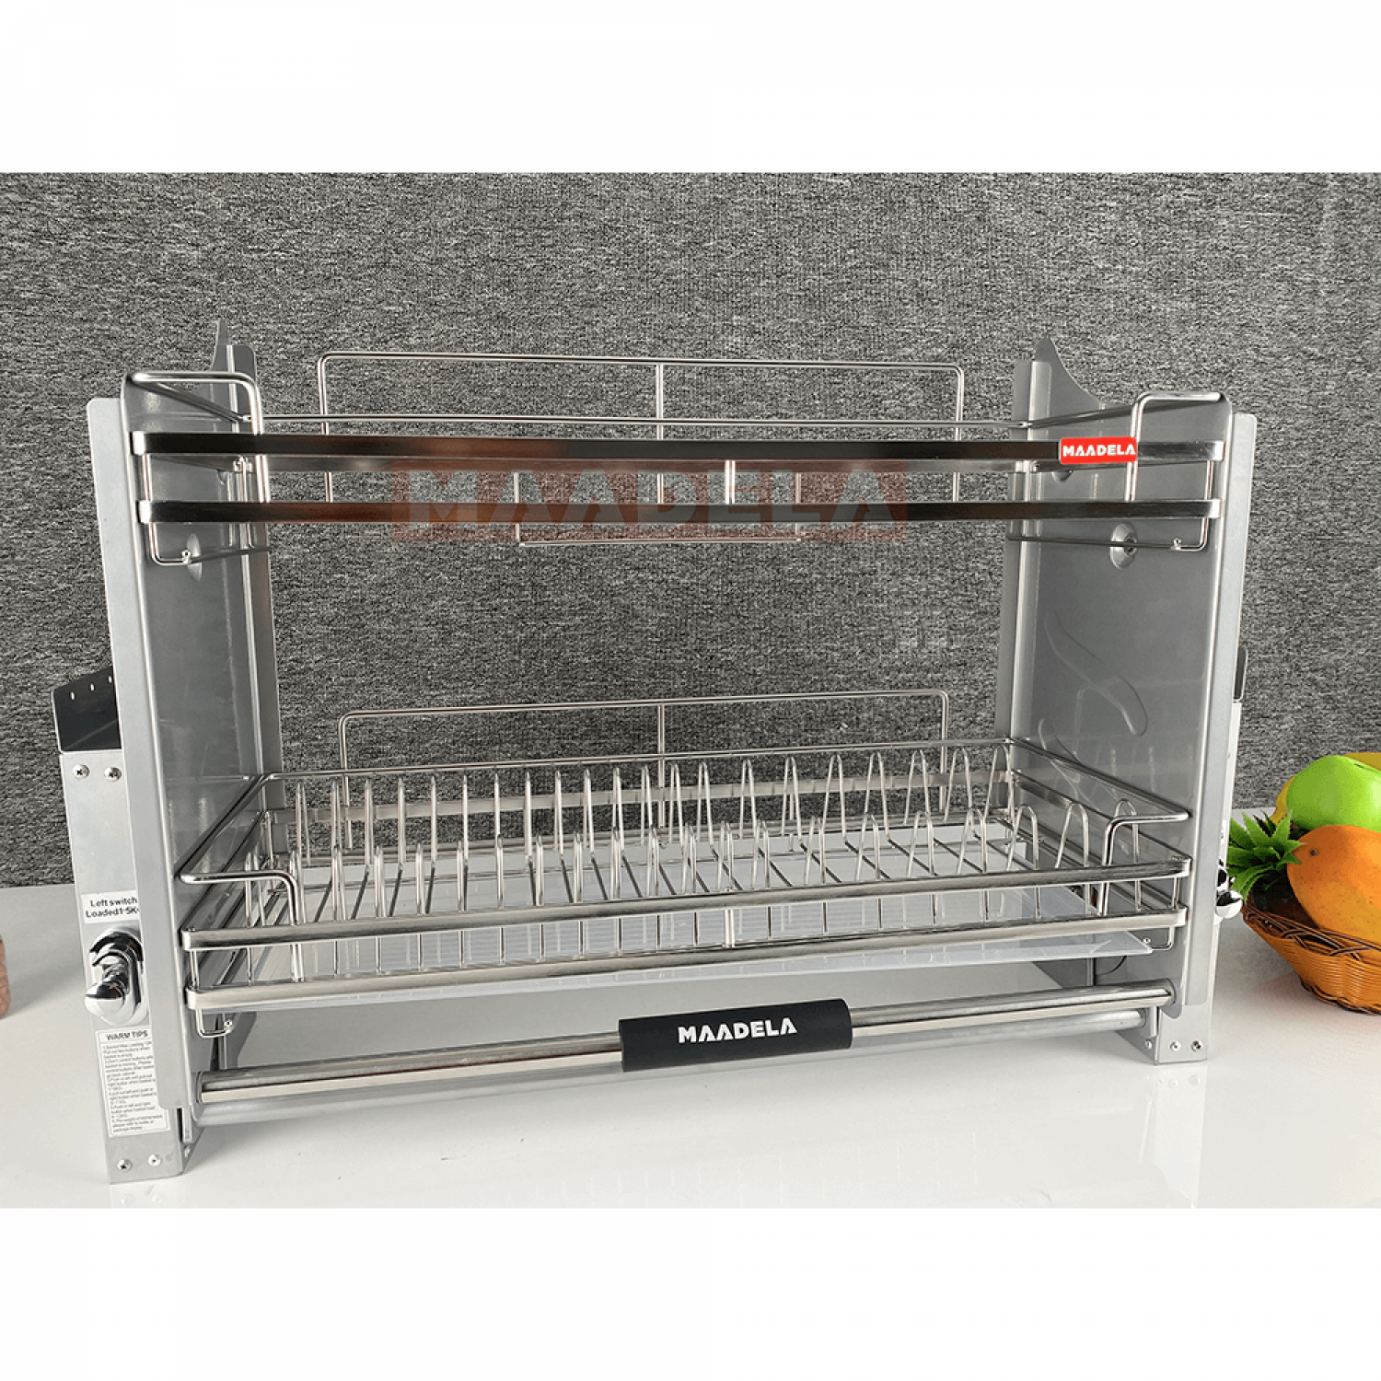 Giá bát đĩa nâng hạ Inox 304 cho tủ bếp trên Maadela MP-G30-2.70 sở hữu thiết kế sang trọng và hiện đại, thích hợp với mọi không gian nhà bếp